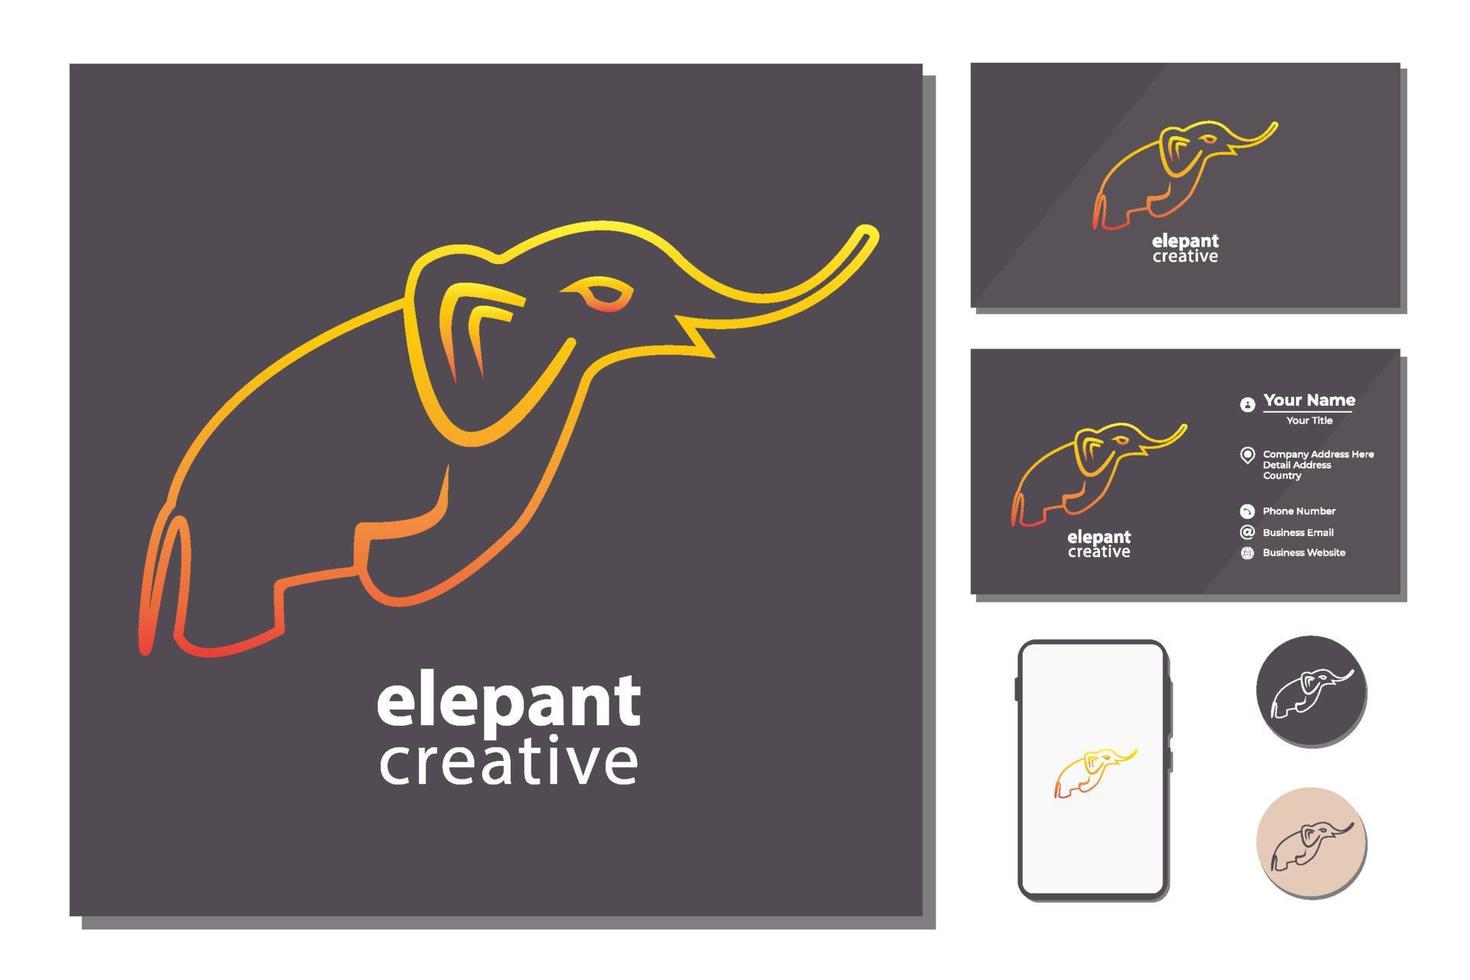 création de logo d'éléphant vecteur